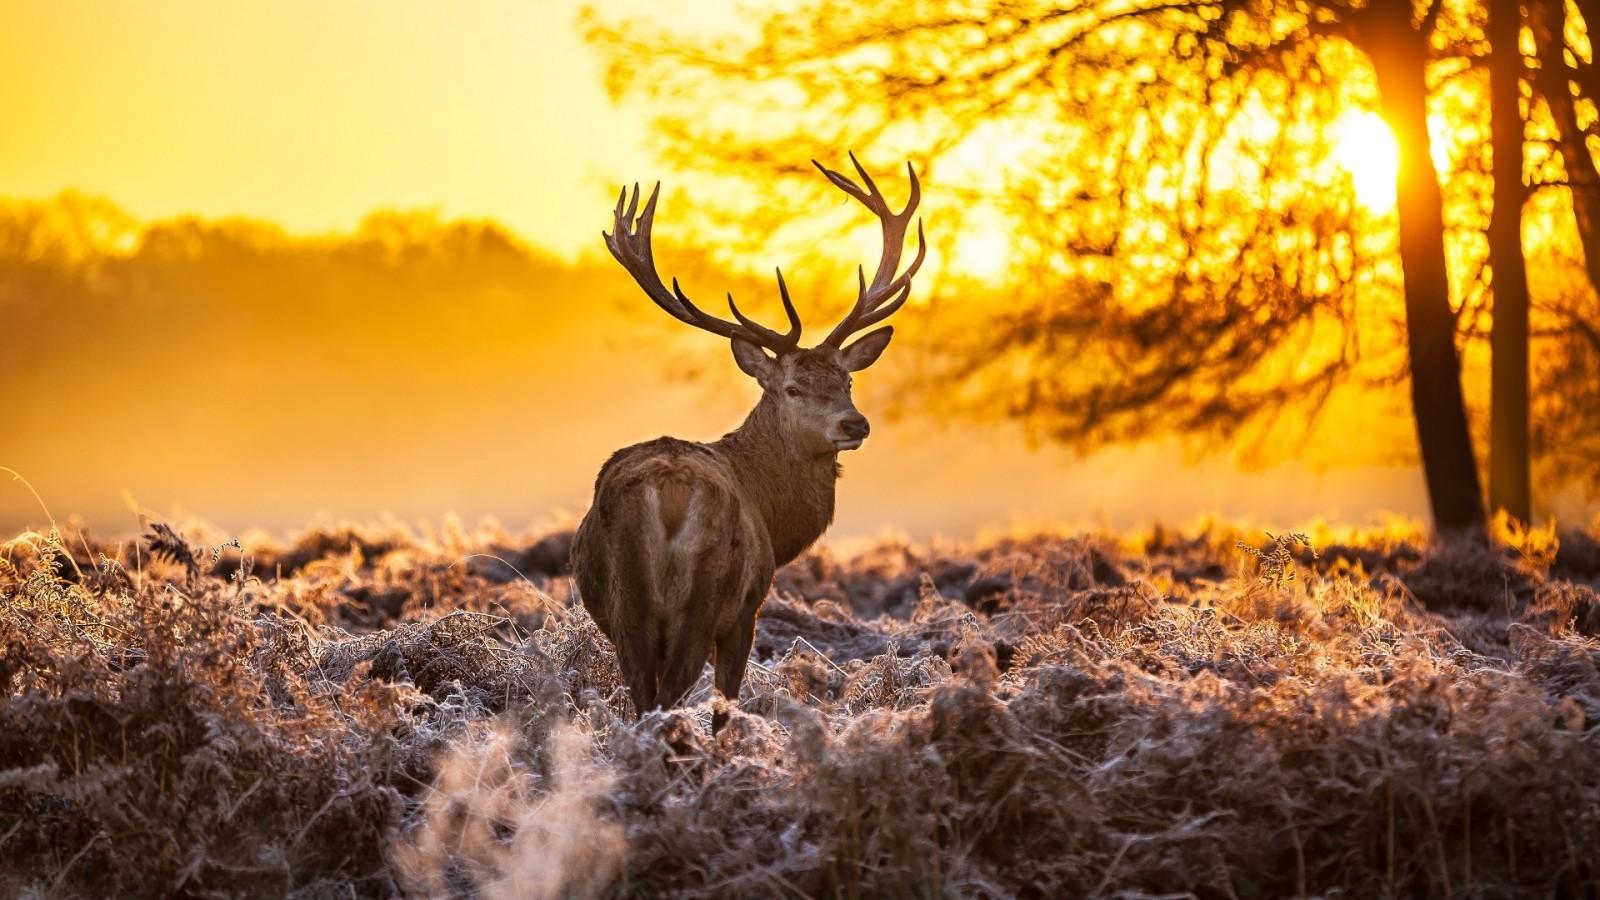 Download 1600x900 Deer, Sunset, Back View, Field Wallpaper